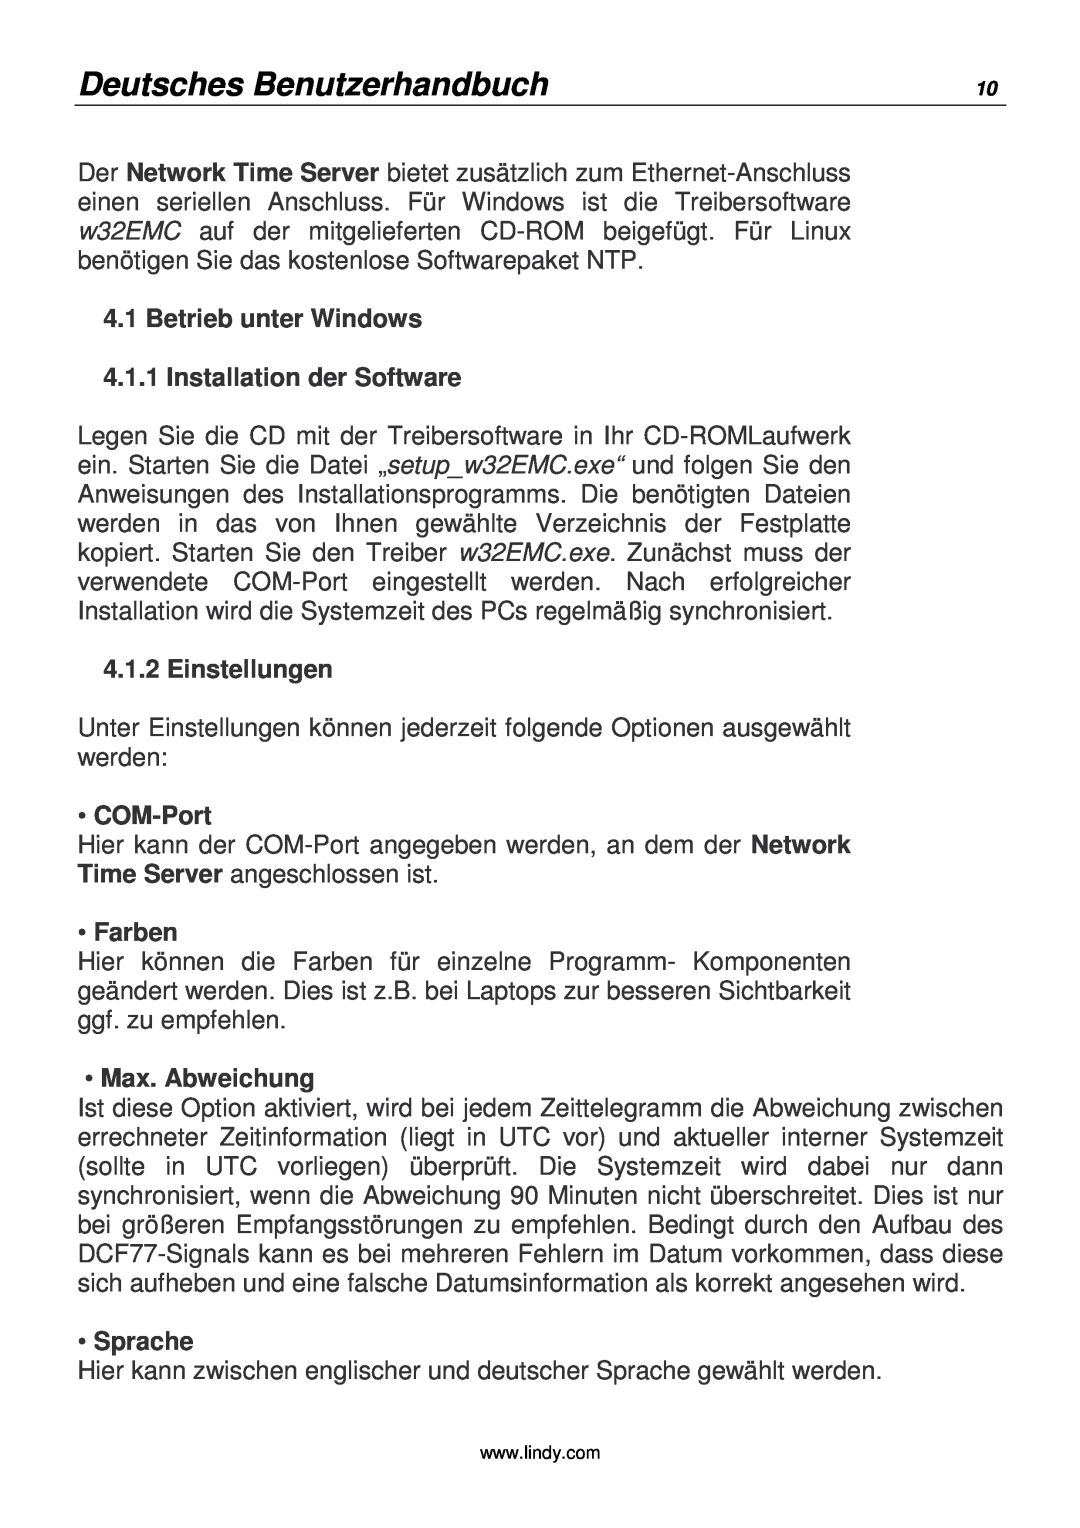 Lindy 20988 manual Deutsches Benutzerhandbuch, Einstellungen, COM-Port, Farben, Max. Abweichung, Sprache 